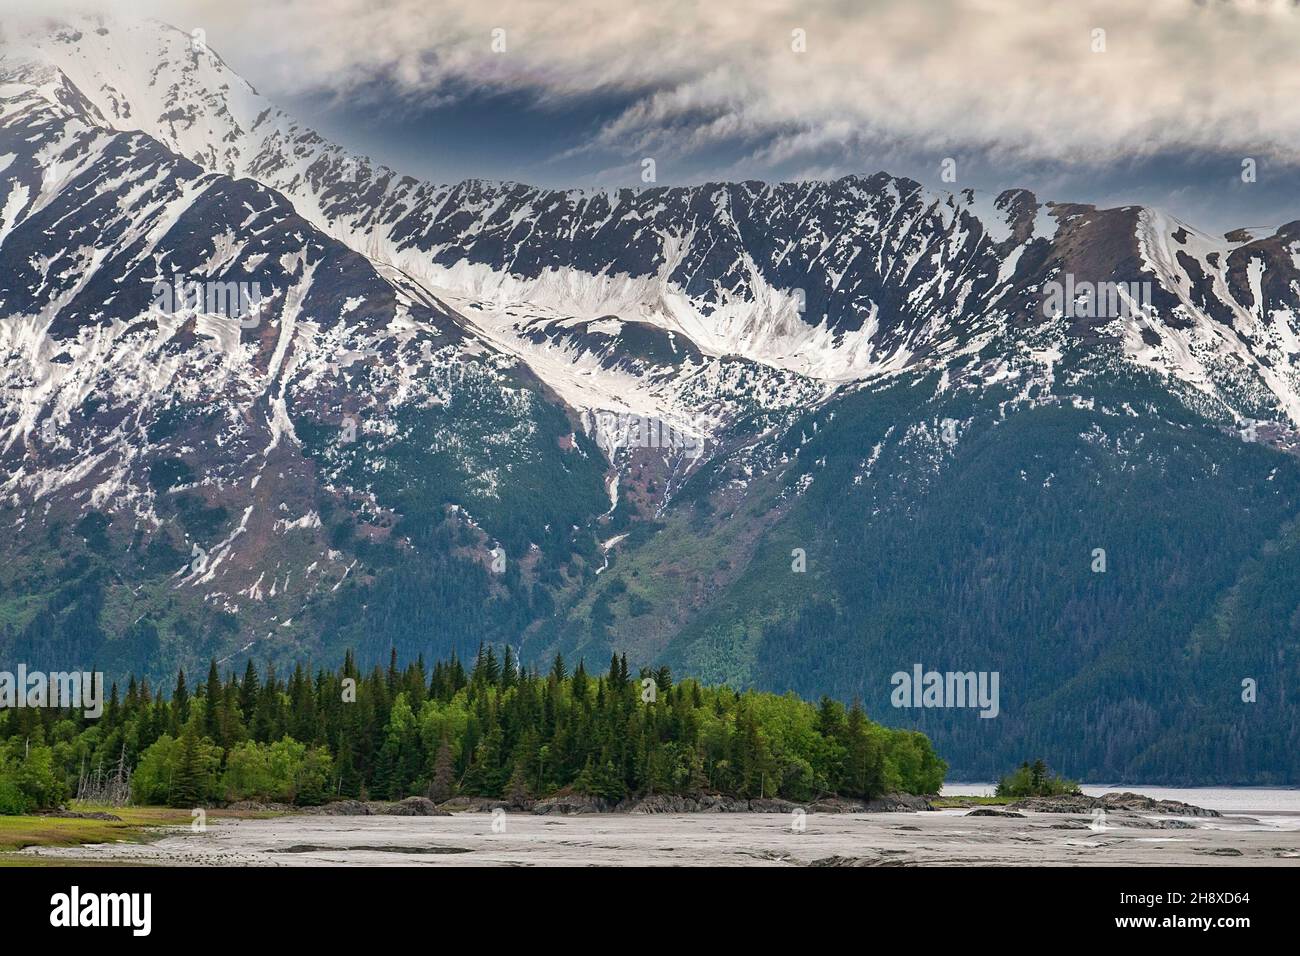 Majestuoso paisaje de Alaska con bosques verdes y escarpadas montañas cubiertas de nieve. Foto de stock